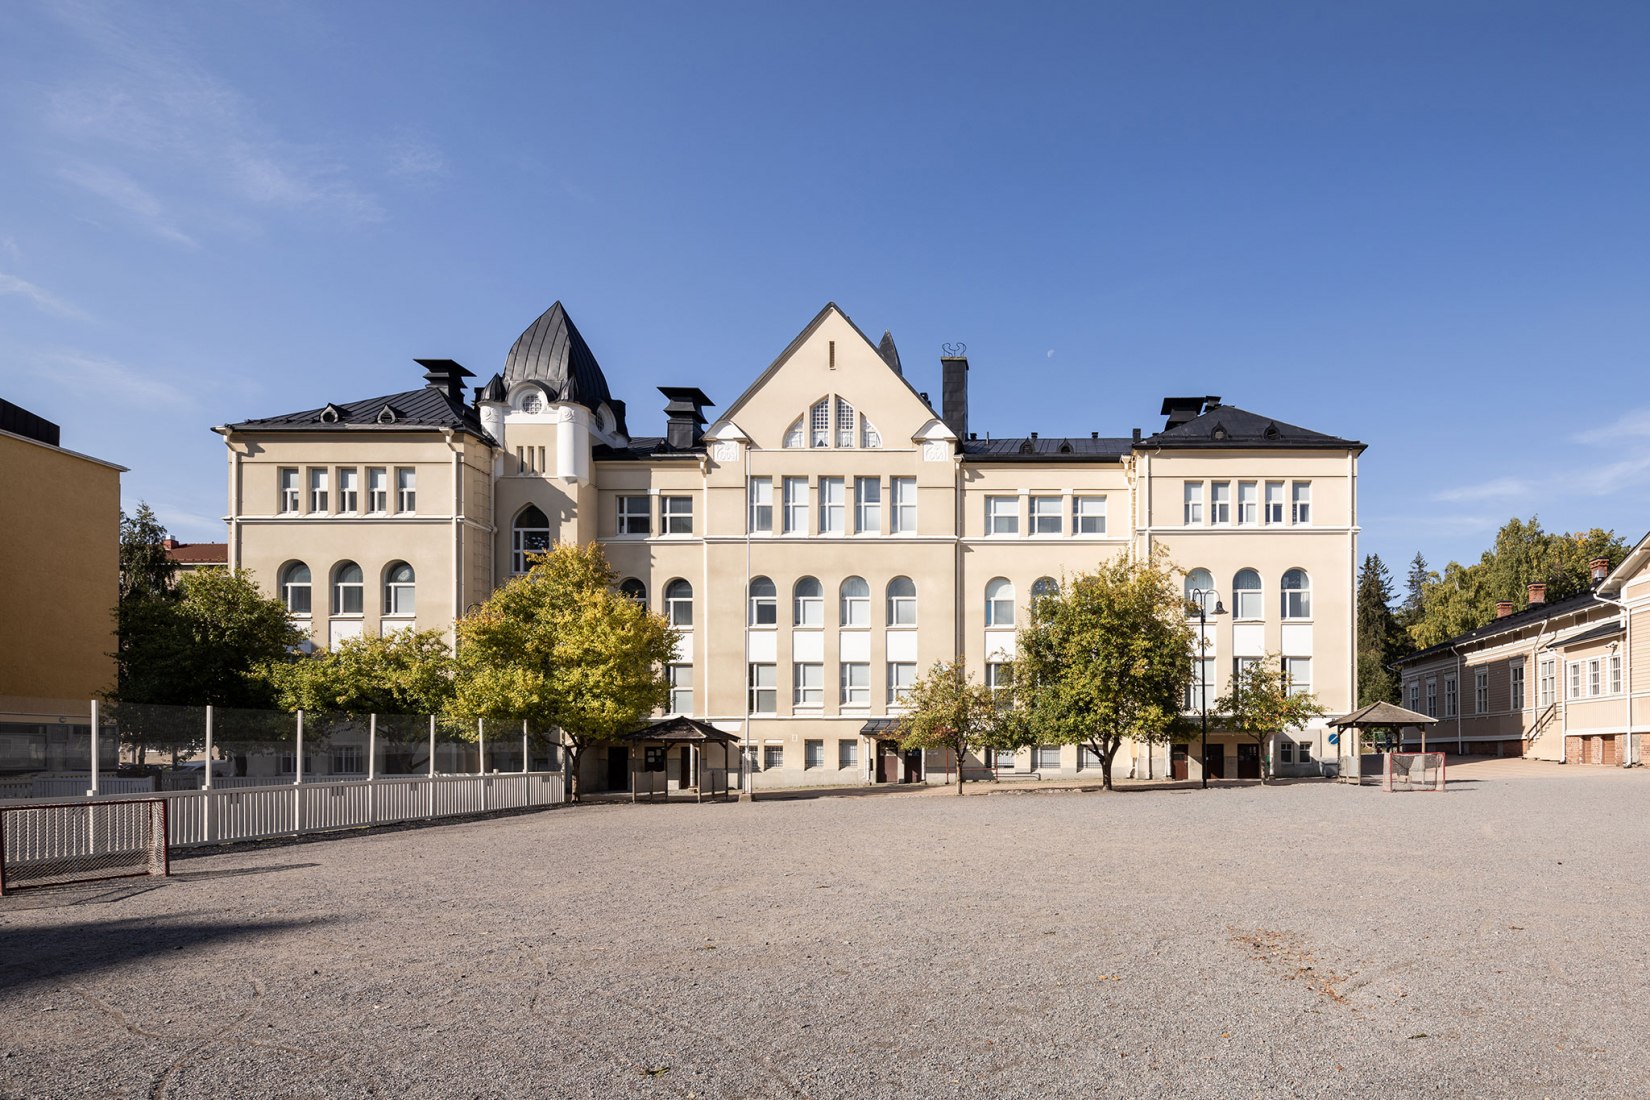 Escuela primaria Aleksanteri, Tampere, 1904. © Museo de Arquitectura Finlandesa. Fotografía por Aukusti Heinonen.